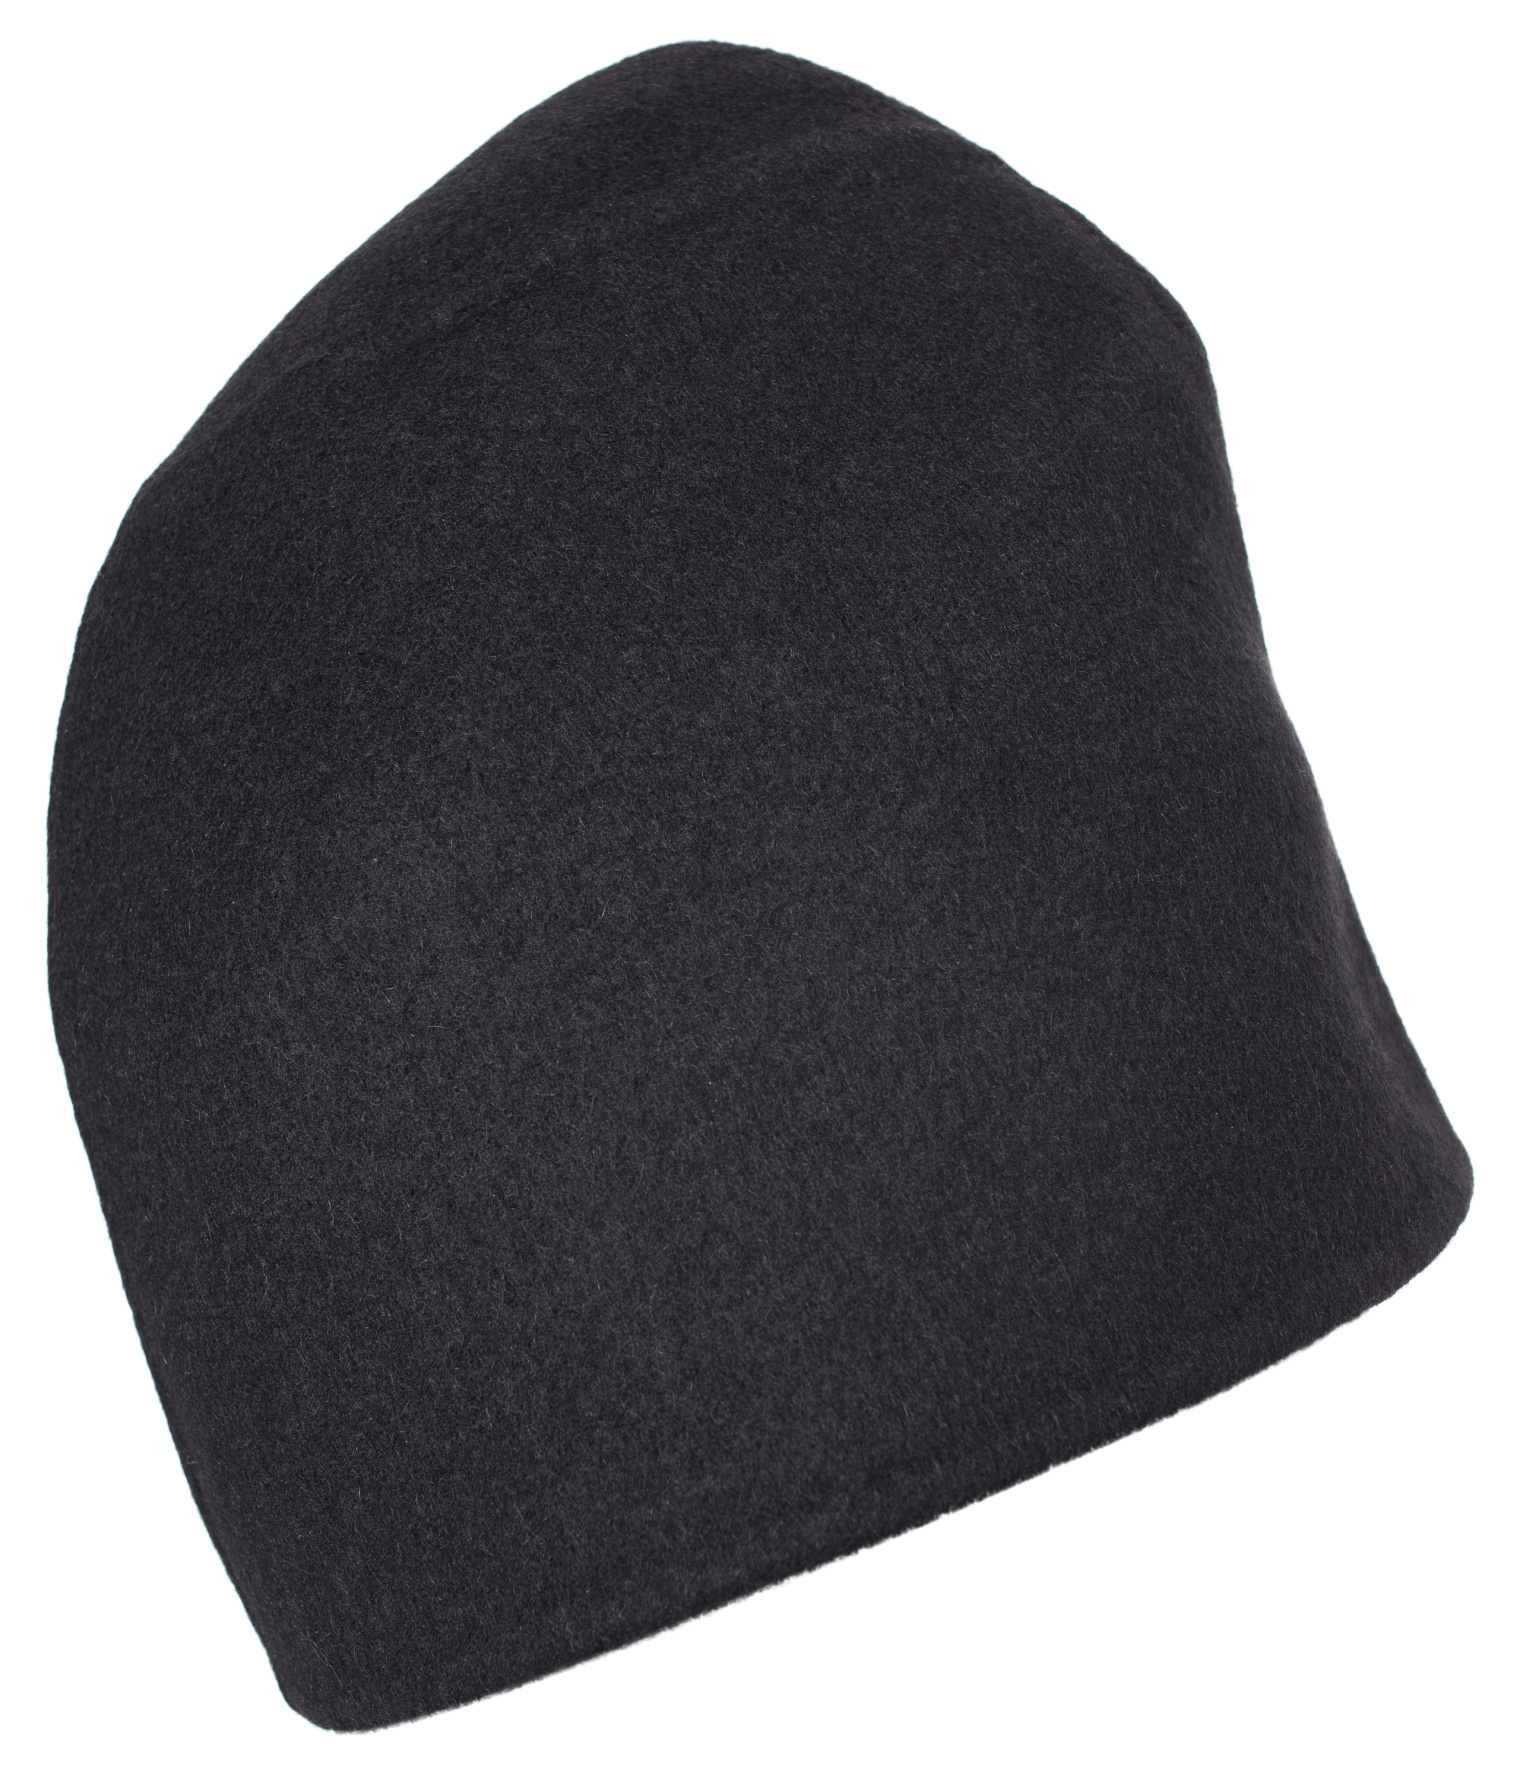 Jil Sander Black hat